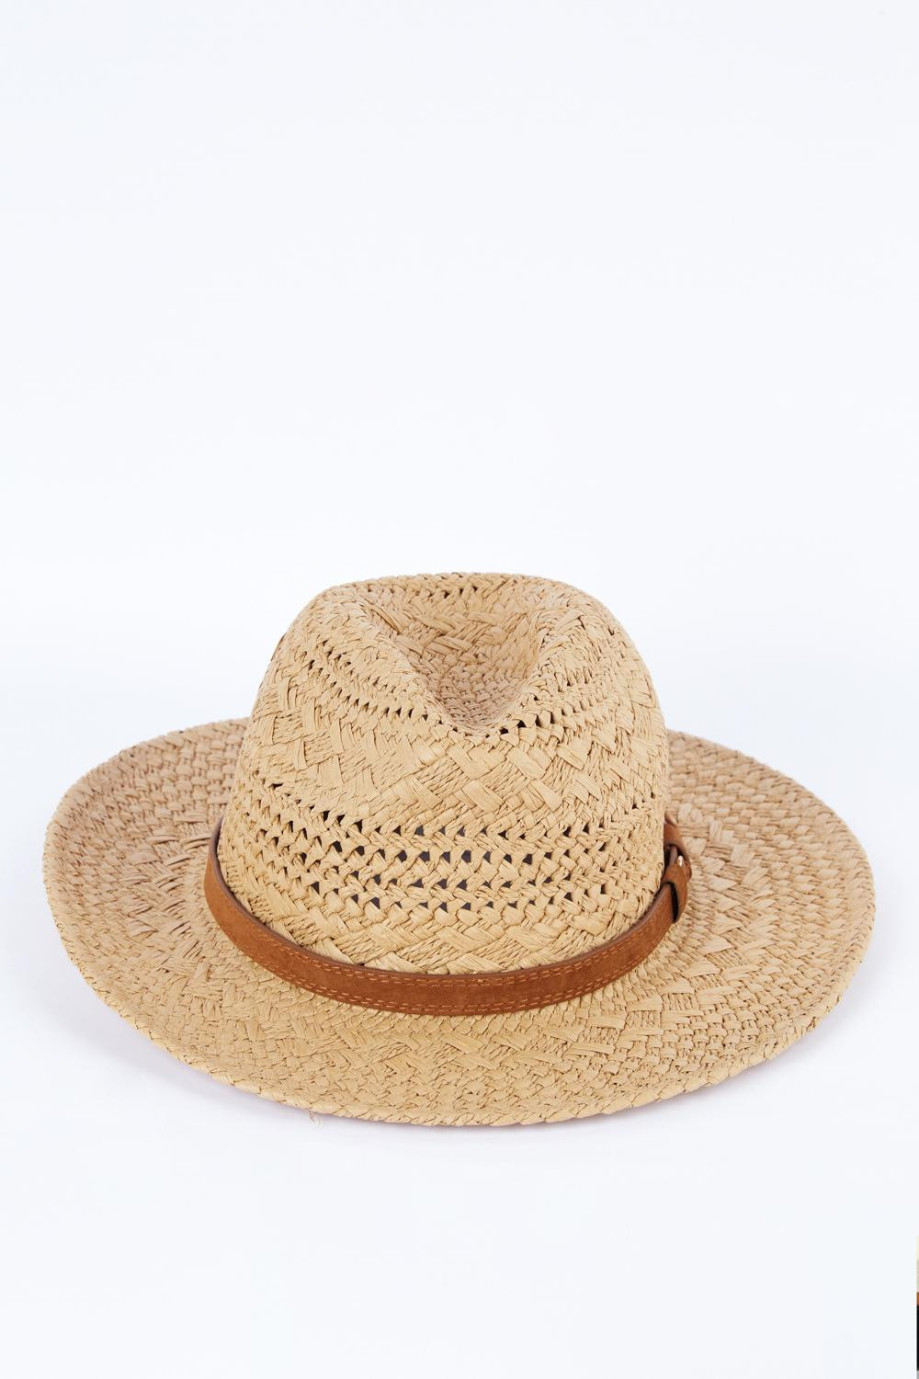 Sombrero kaky claro con ala corta y lazo café decorativo